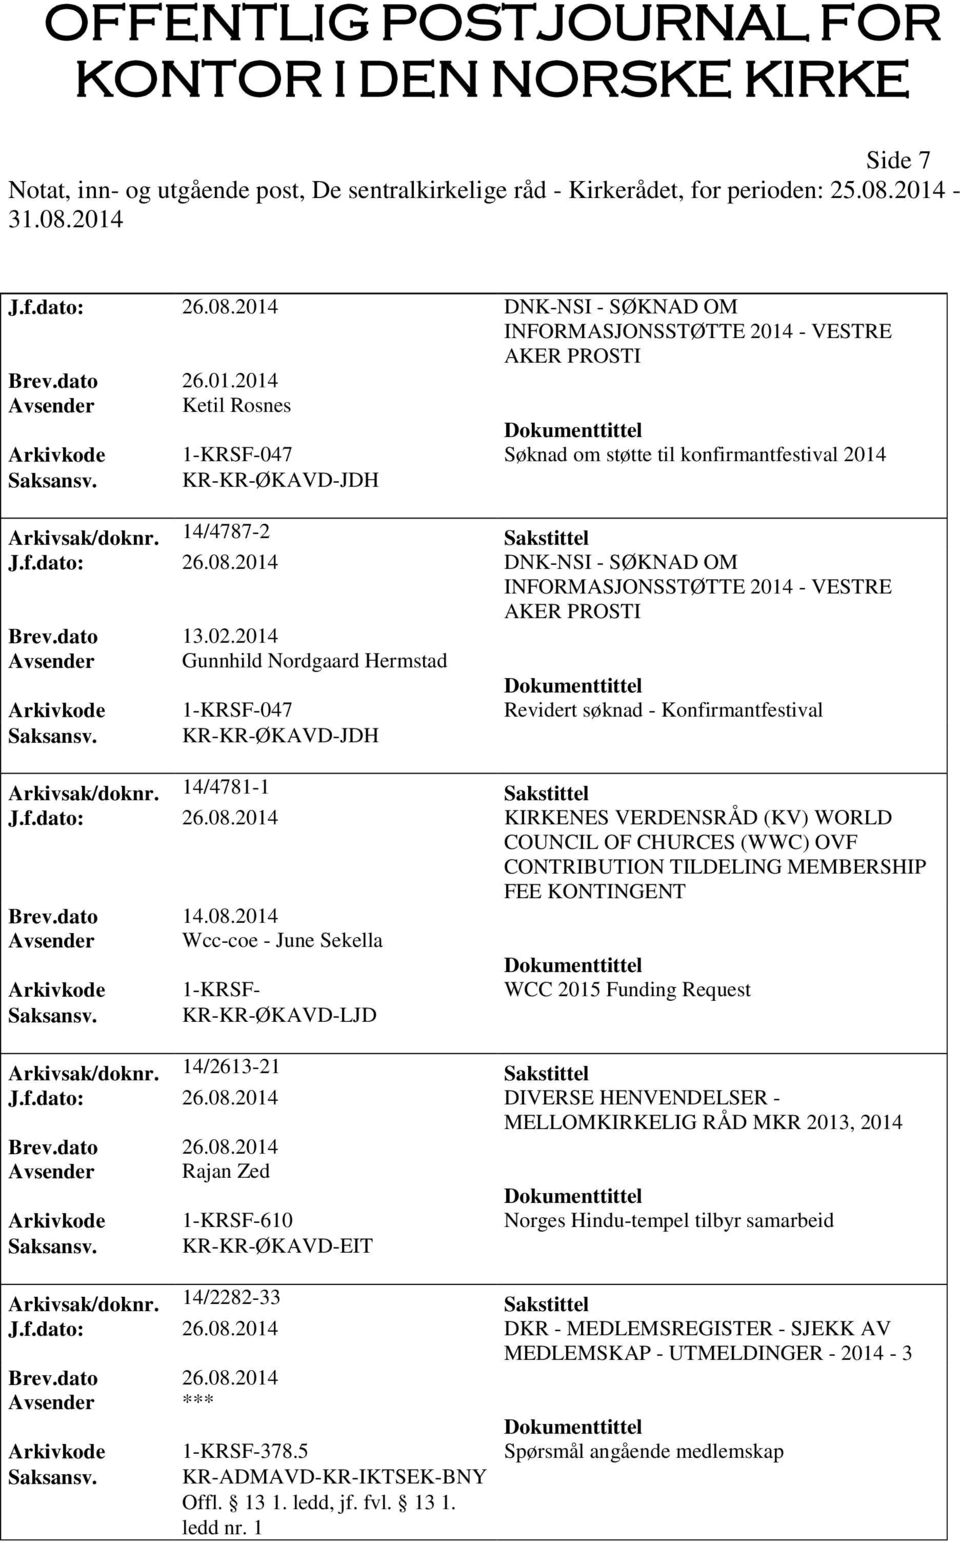 2014 Avsender Gunnhild Nordgaard Hermstad Arkivkode 1-KRSF-047 Revidert søknad - Konfirmantfestival Saksansv. KR-KR-ØKAVD-JDH Arkivsak/doknr. 14/4781-1 Sakstittel J.f.dato: 26.08.